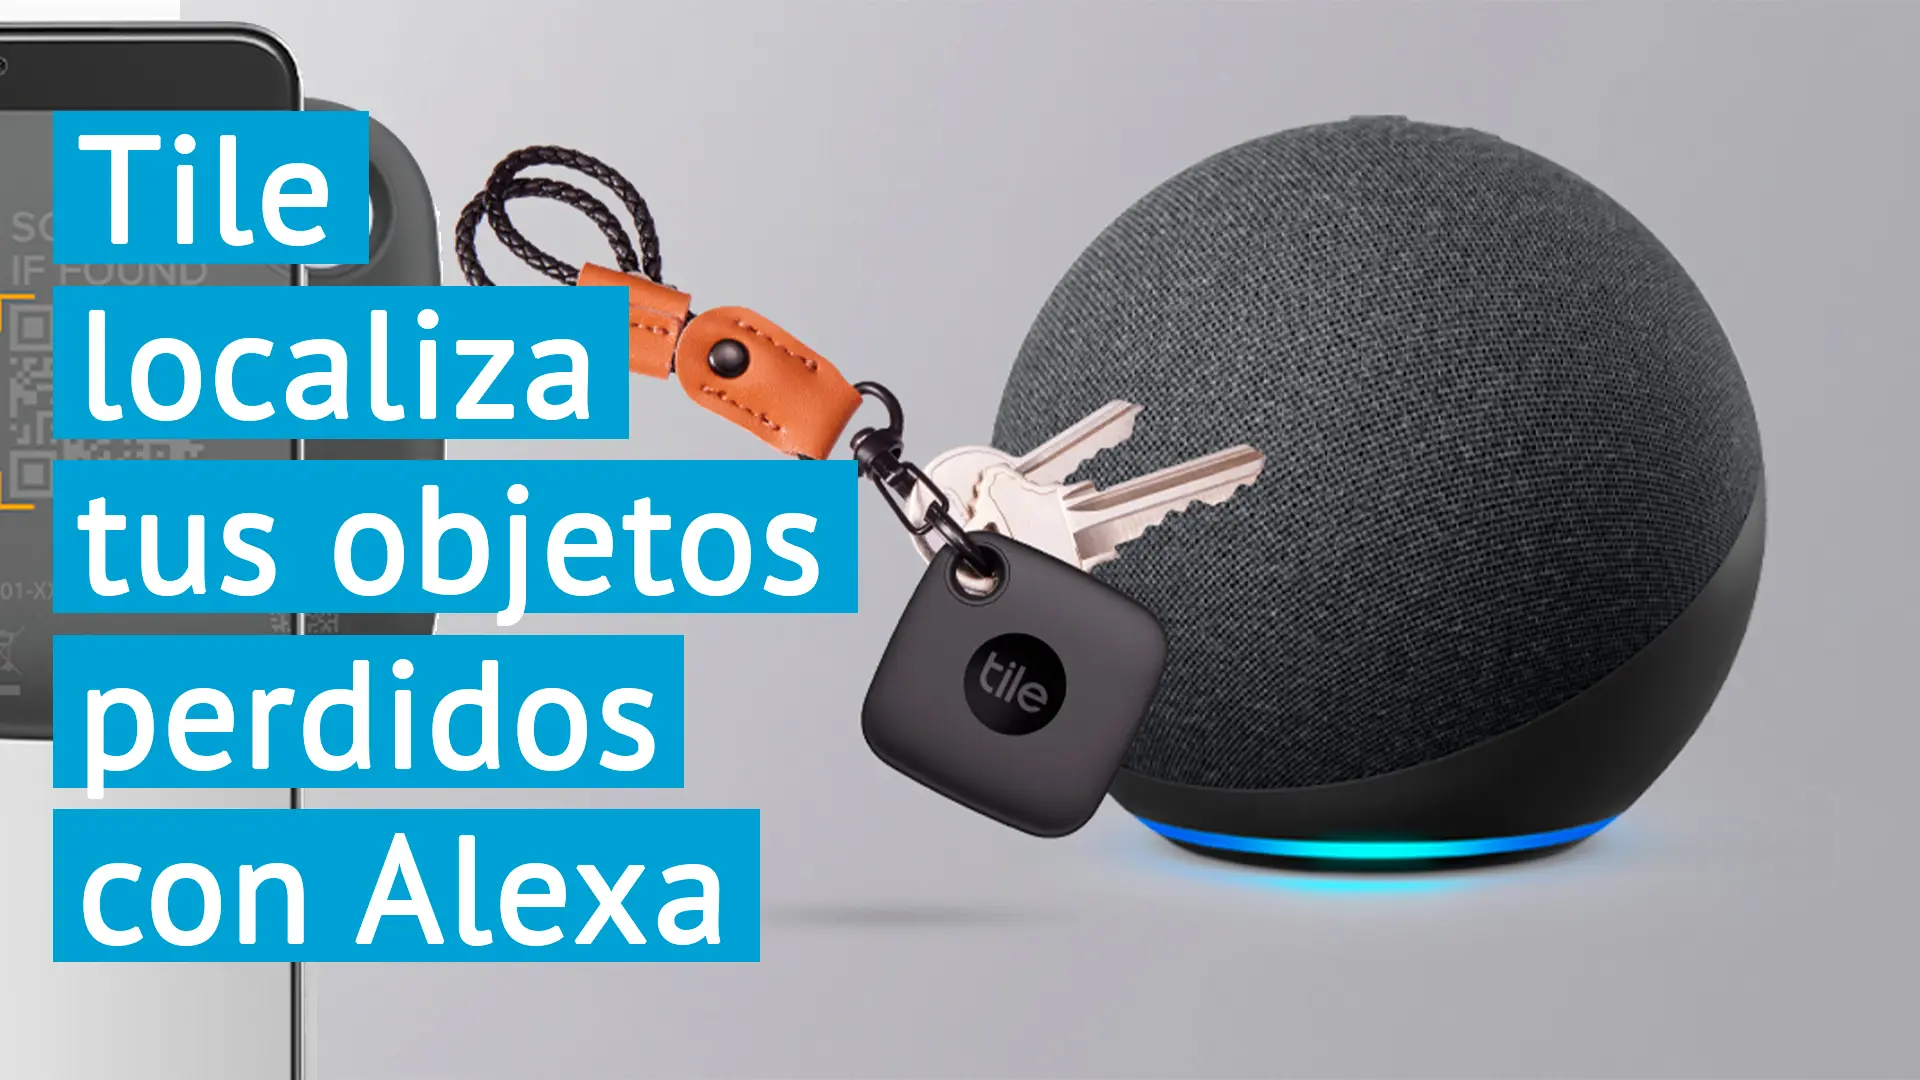 Tile es el localizador de objetos perdidos por control remoto y con Amazon Alexa